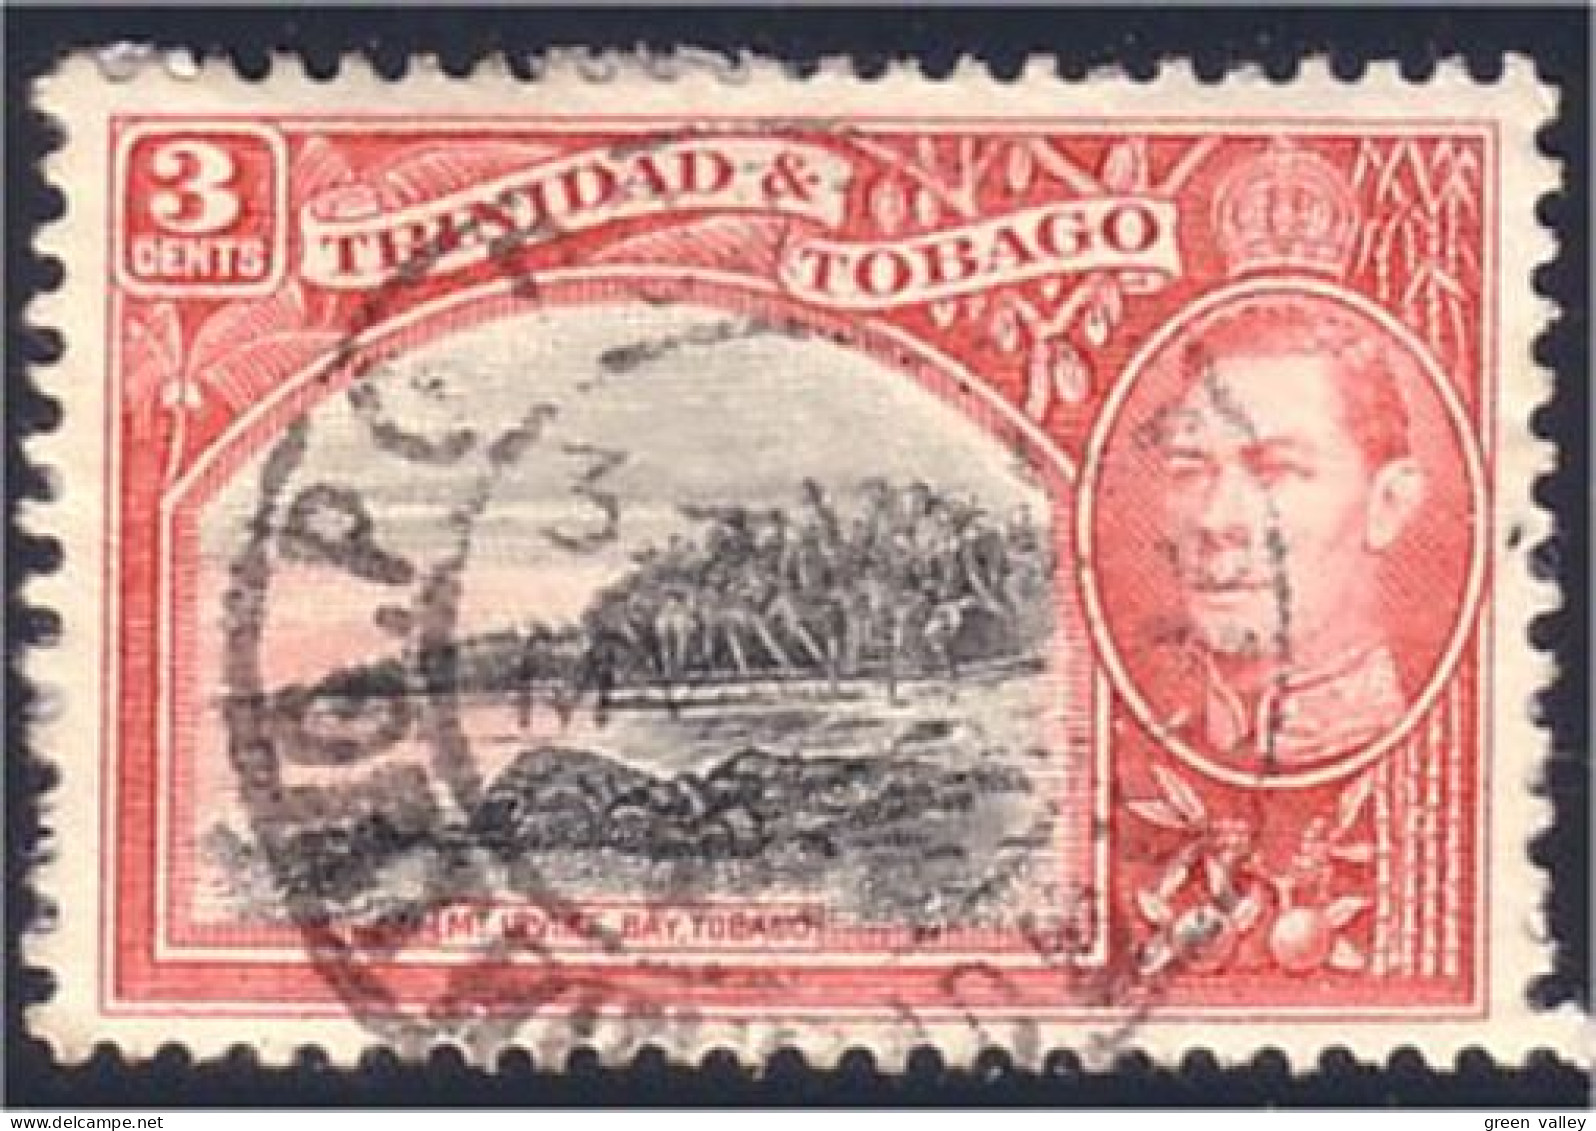 868 Tobago Trinidad Irvine Bay (TOB-57) - Trinidad Y Tobago (1962-...)